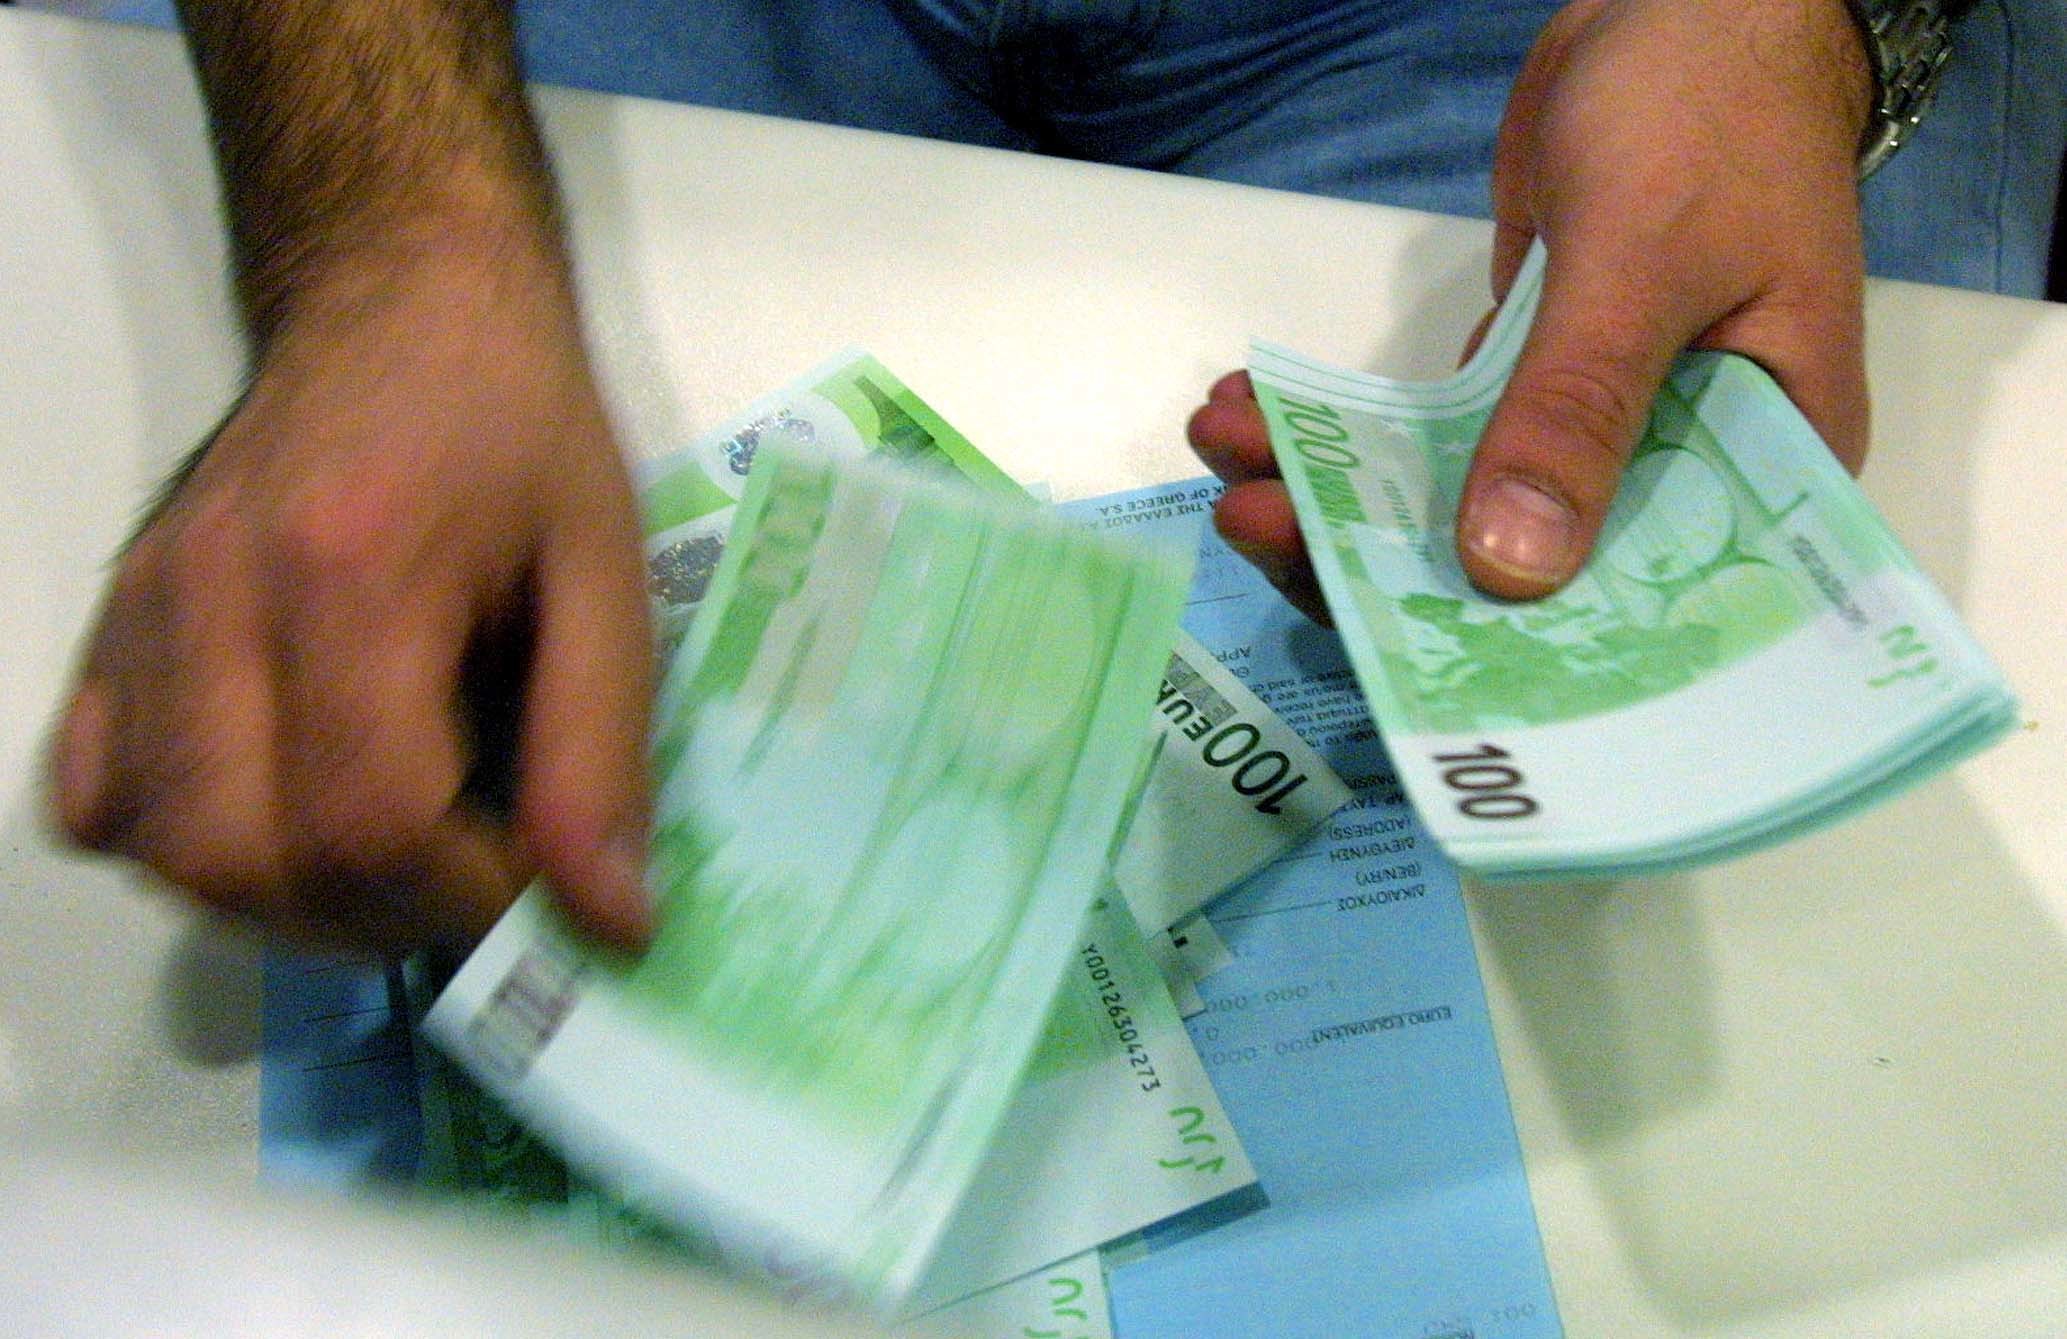 Αγρίνιο: Υπεξαίρεσε 700 χιλιάδες ευρώ σε 3 χρόνια – Χειροπέδες σε υπάλληλο του Ταχυδρομικού Ταμιευτηρίου